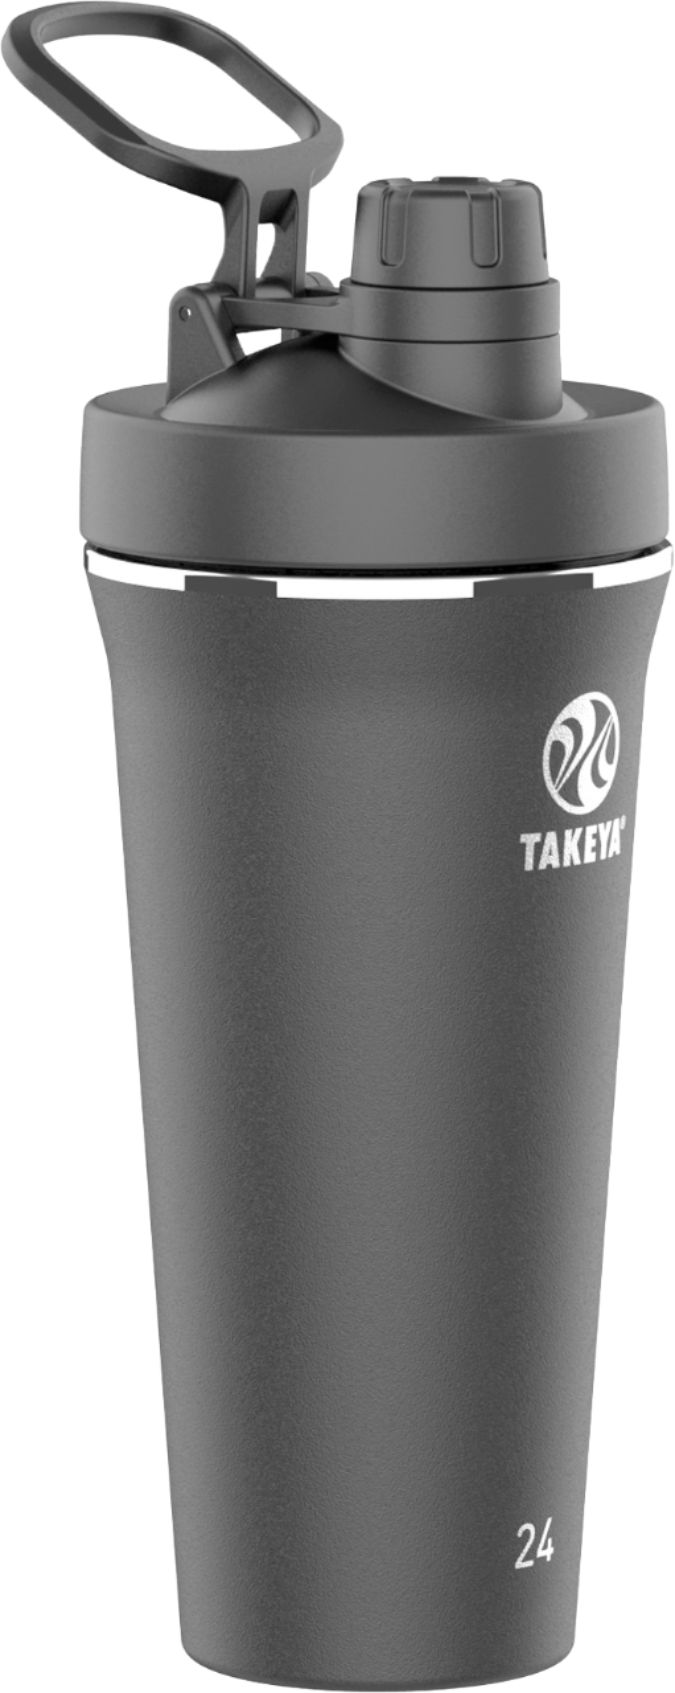 Takeya Shaker 24oz Spout Tumbler Onyx 51622 - Best Buy